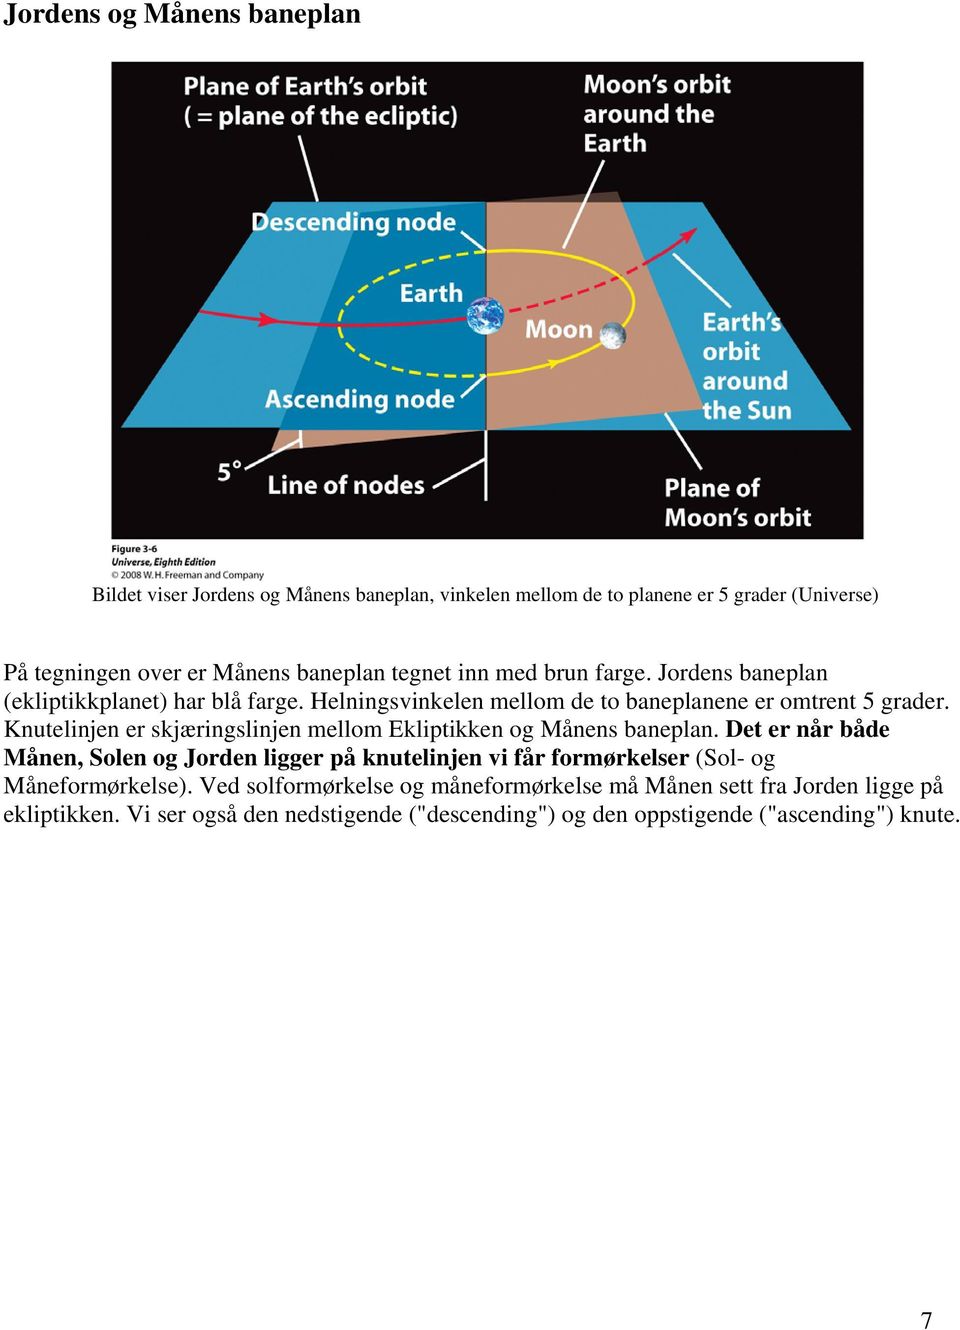 Knutelinjen er skjæringslinjen mellom Ekliptikken og Månens baneplan.